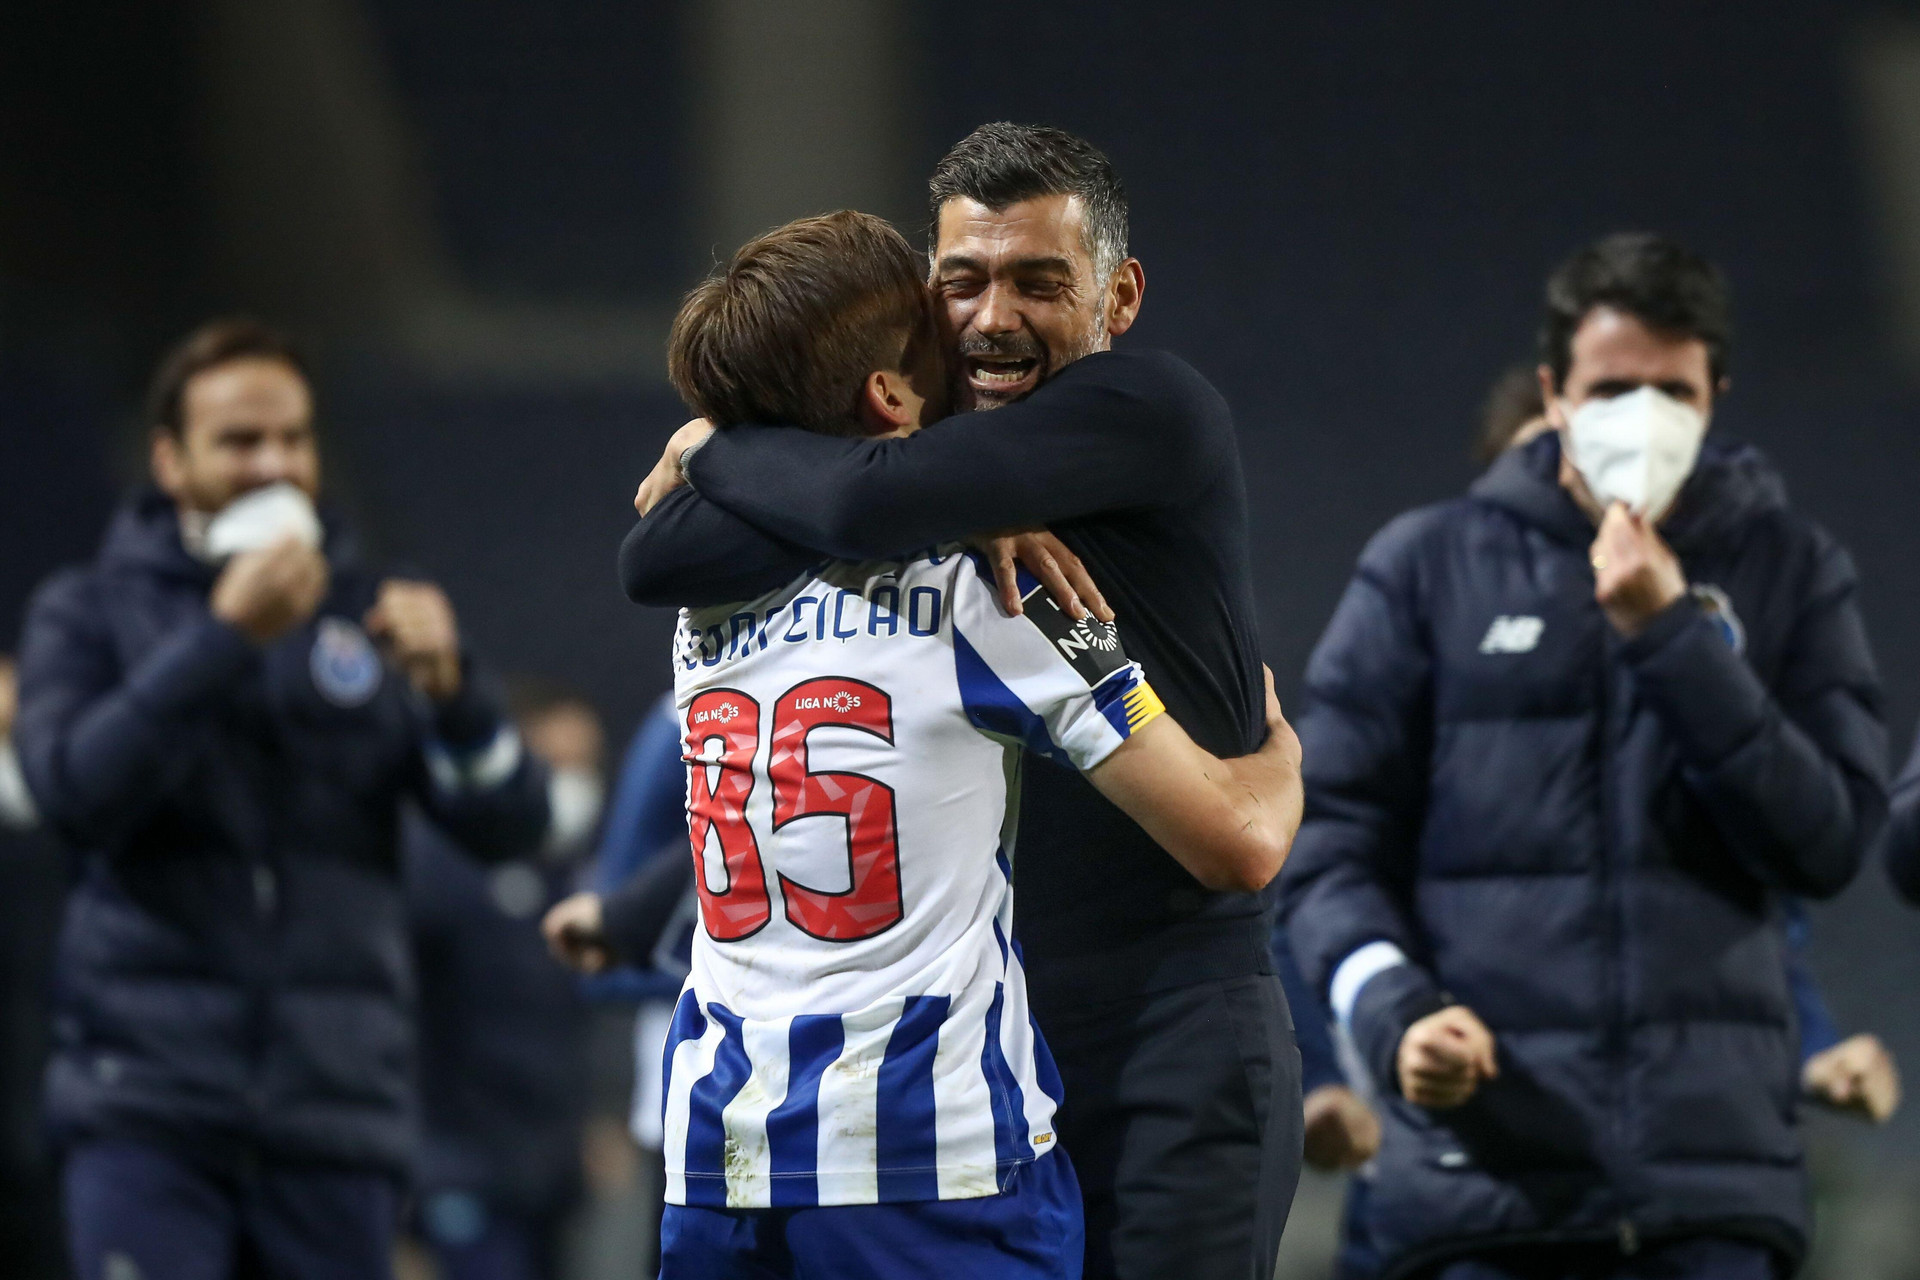 Huấn luyện viên Sergio Conceicao ôm chặt con trai sau khi anh ghi bàn thắng quyết định giúp Porto thắng Estoril 3-2.